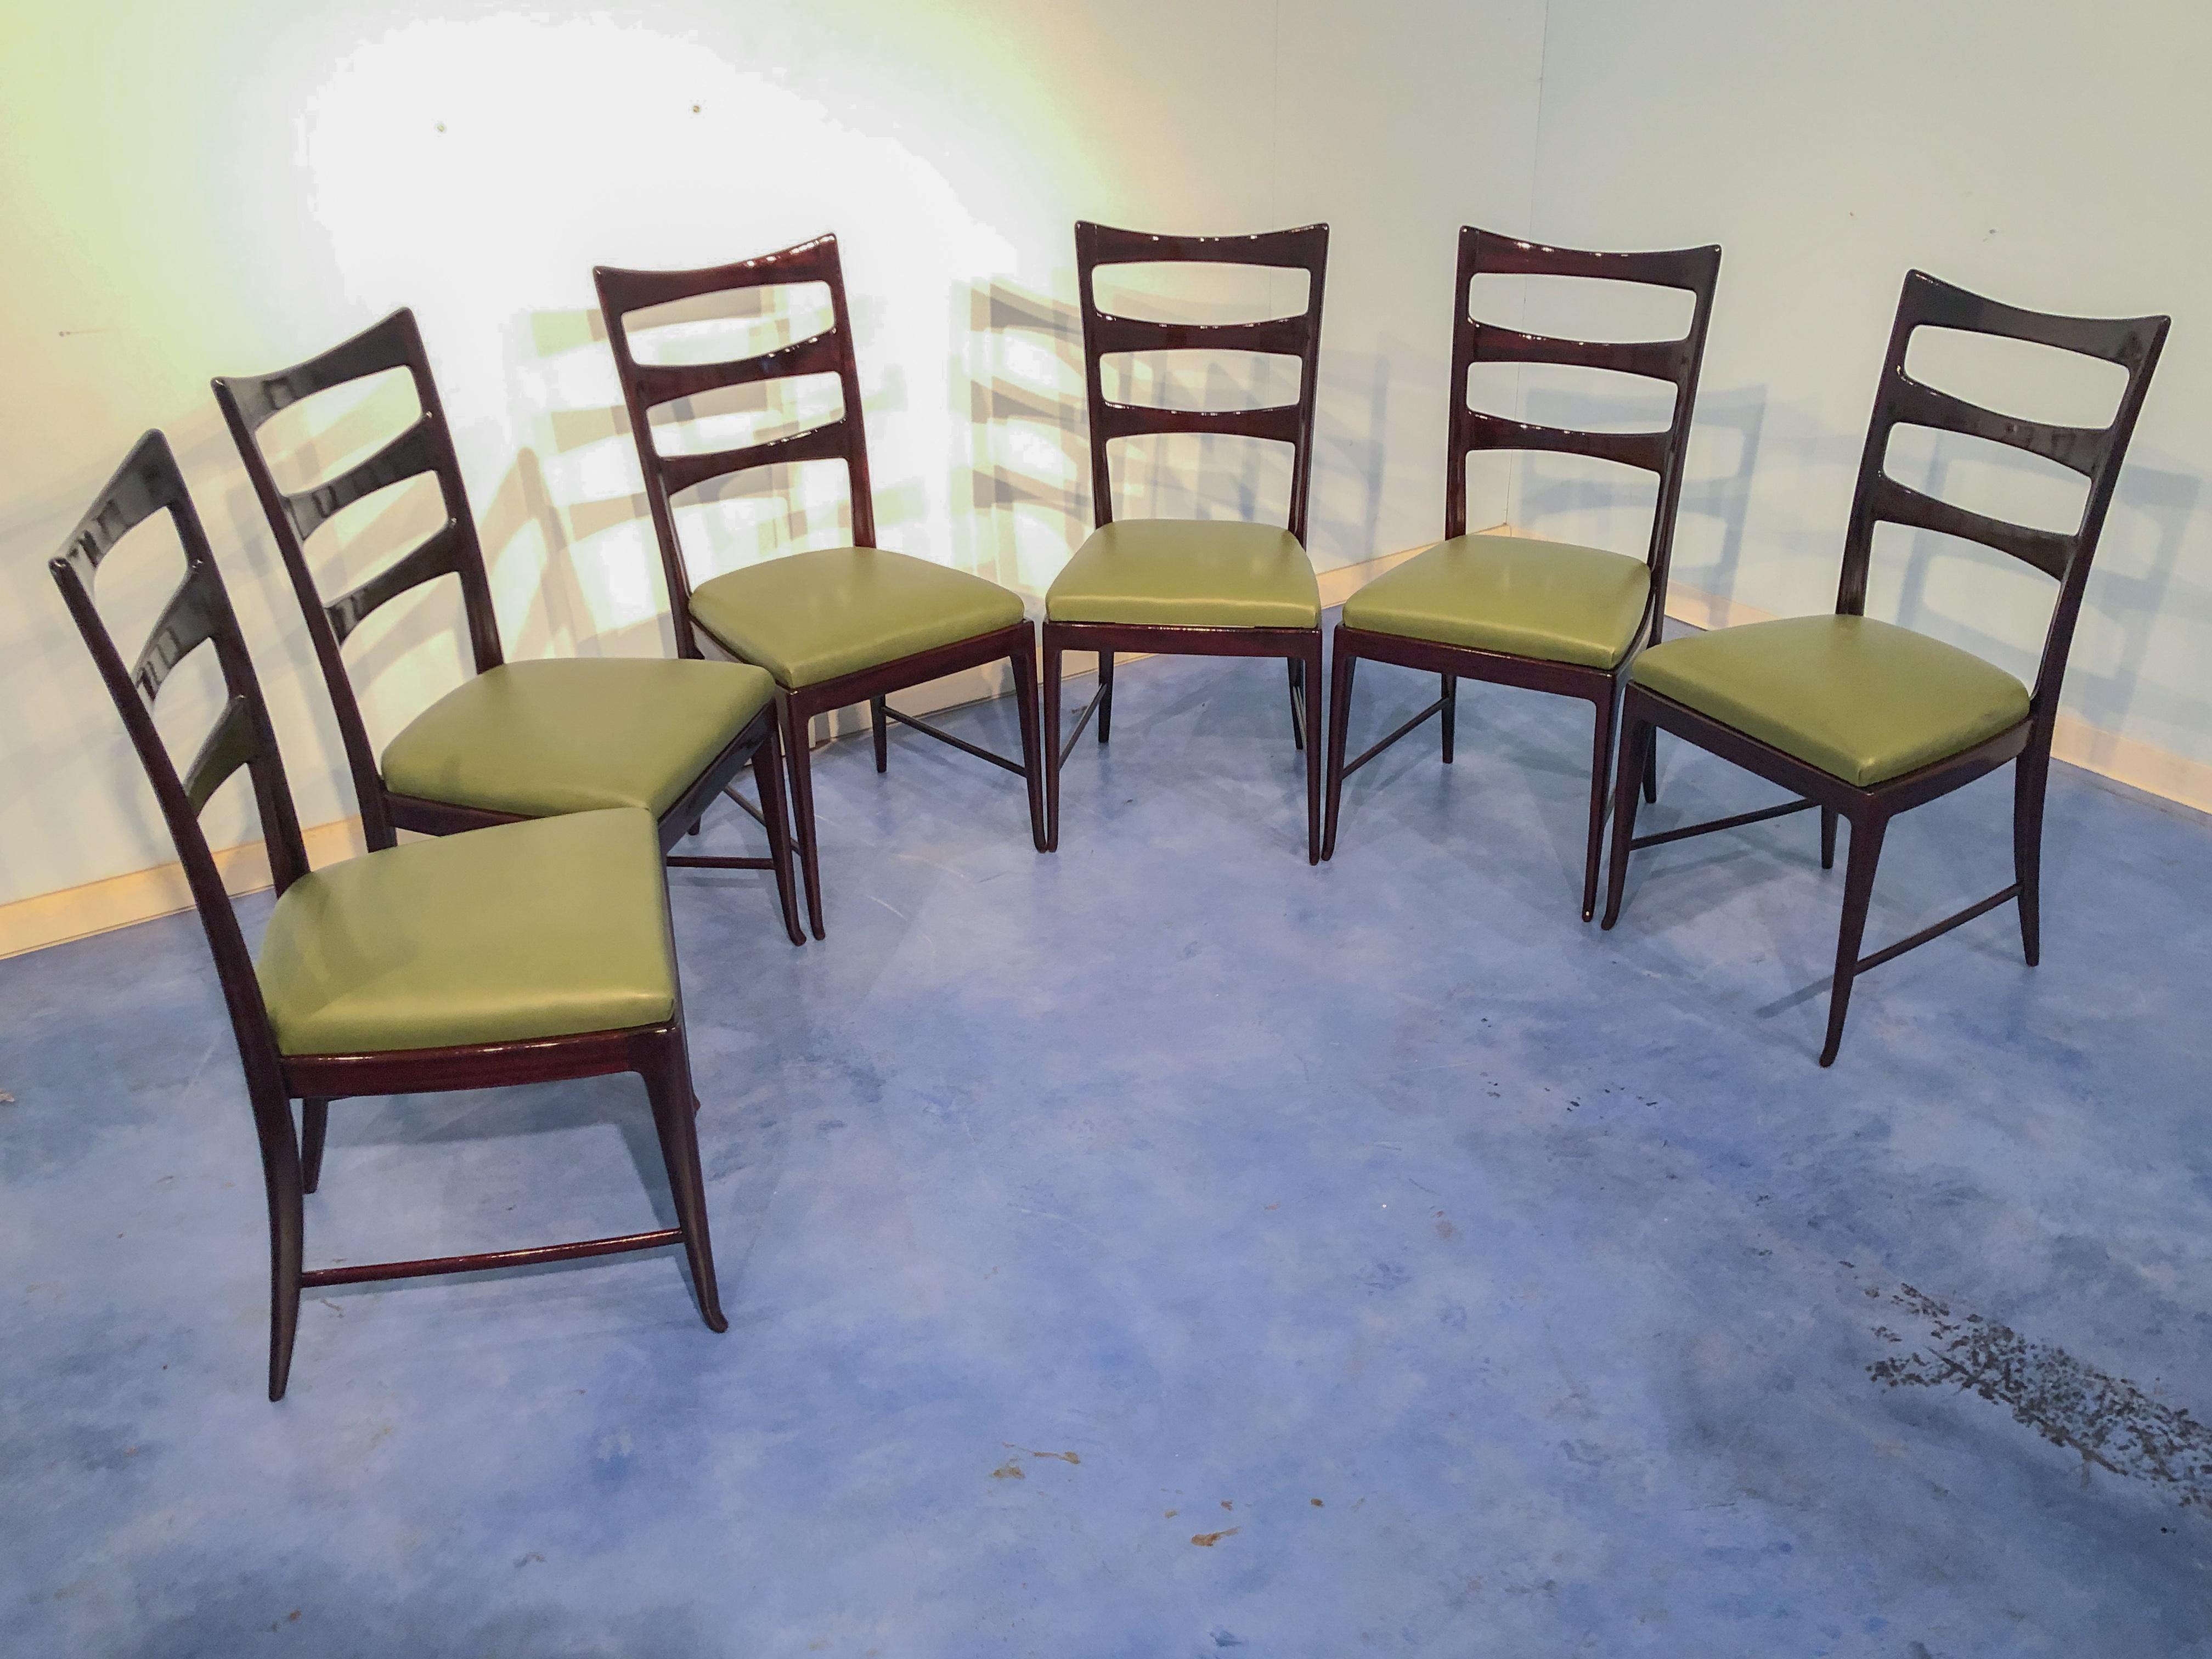 Magnifique ensemble de six chaises de salle à manger de Vittorio Dassi, datant des années 1950. Ligne élégante caractérisée par des dossiers hauts. Structure acajou, belle couleur bordeaux à la lumière. En très bon état d'origine, récemment